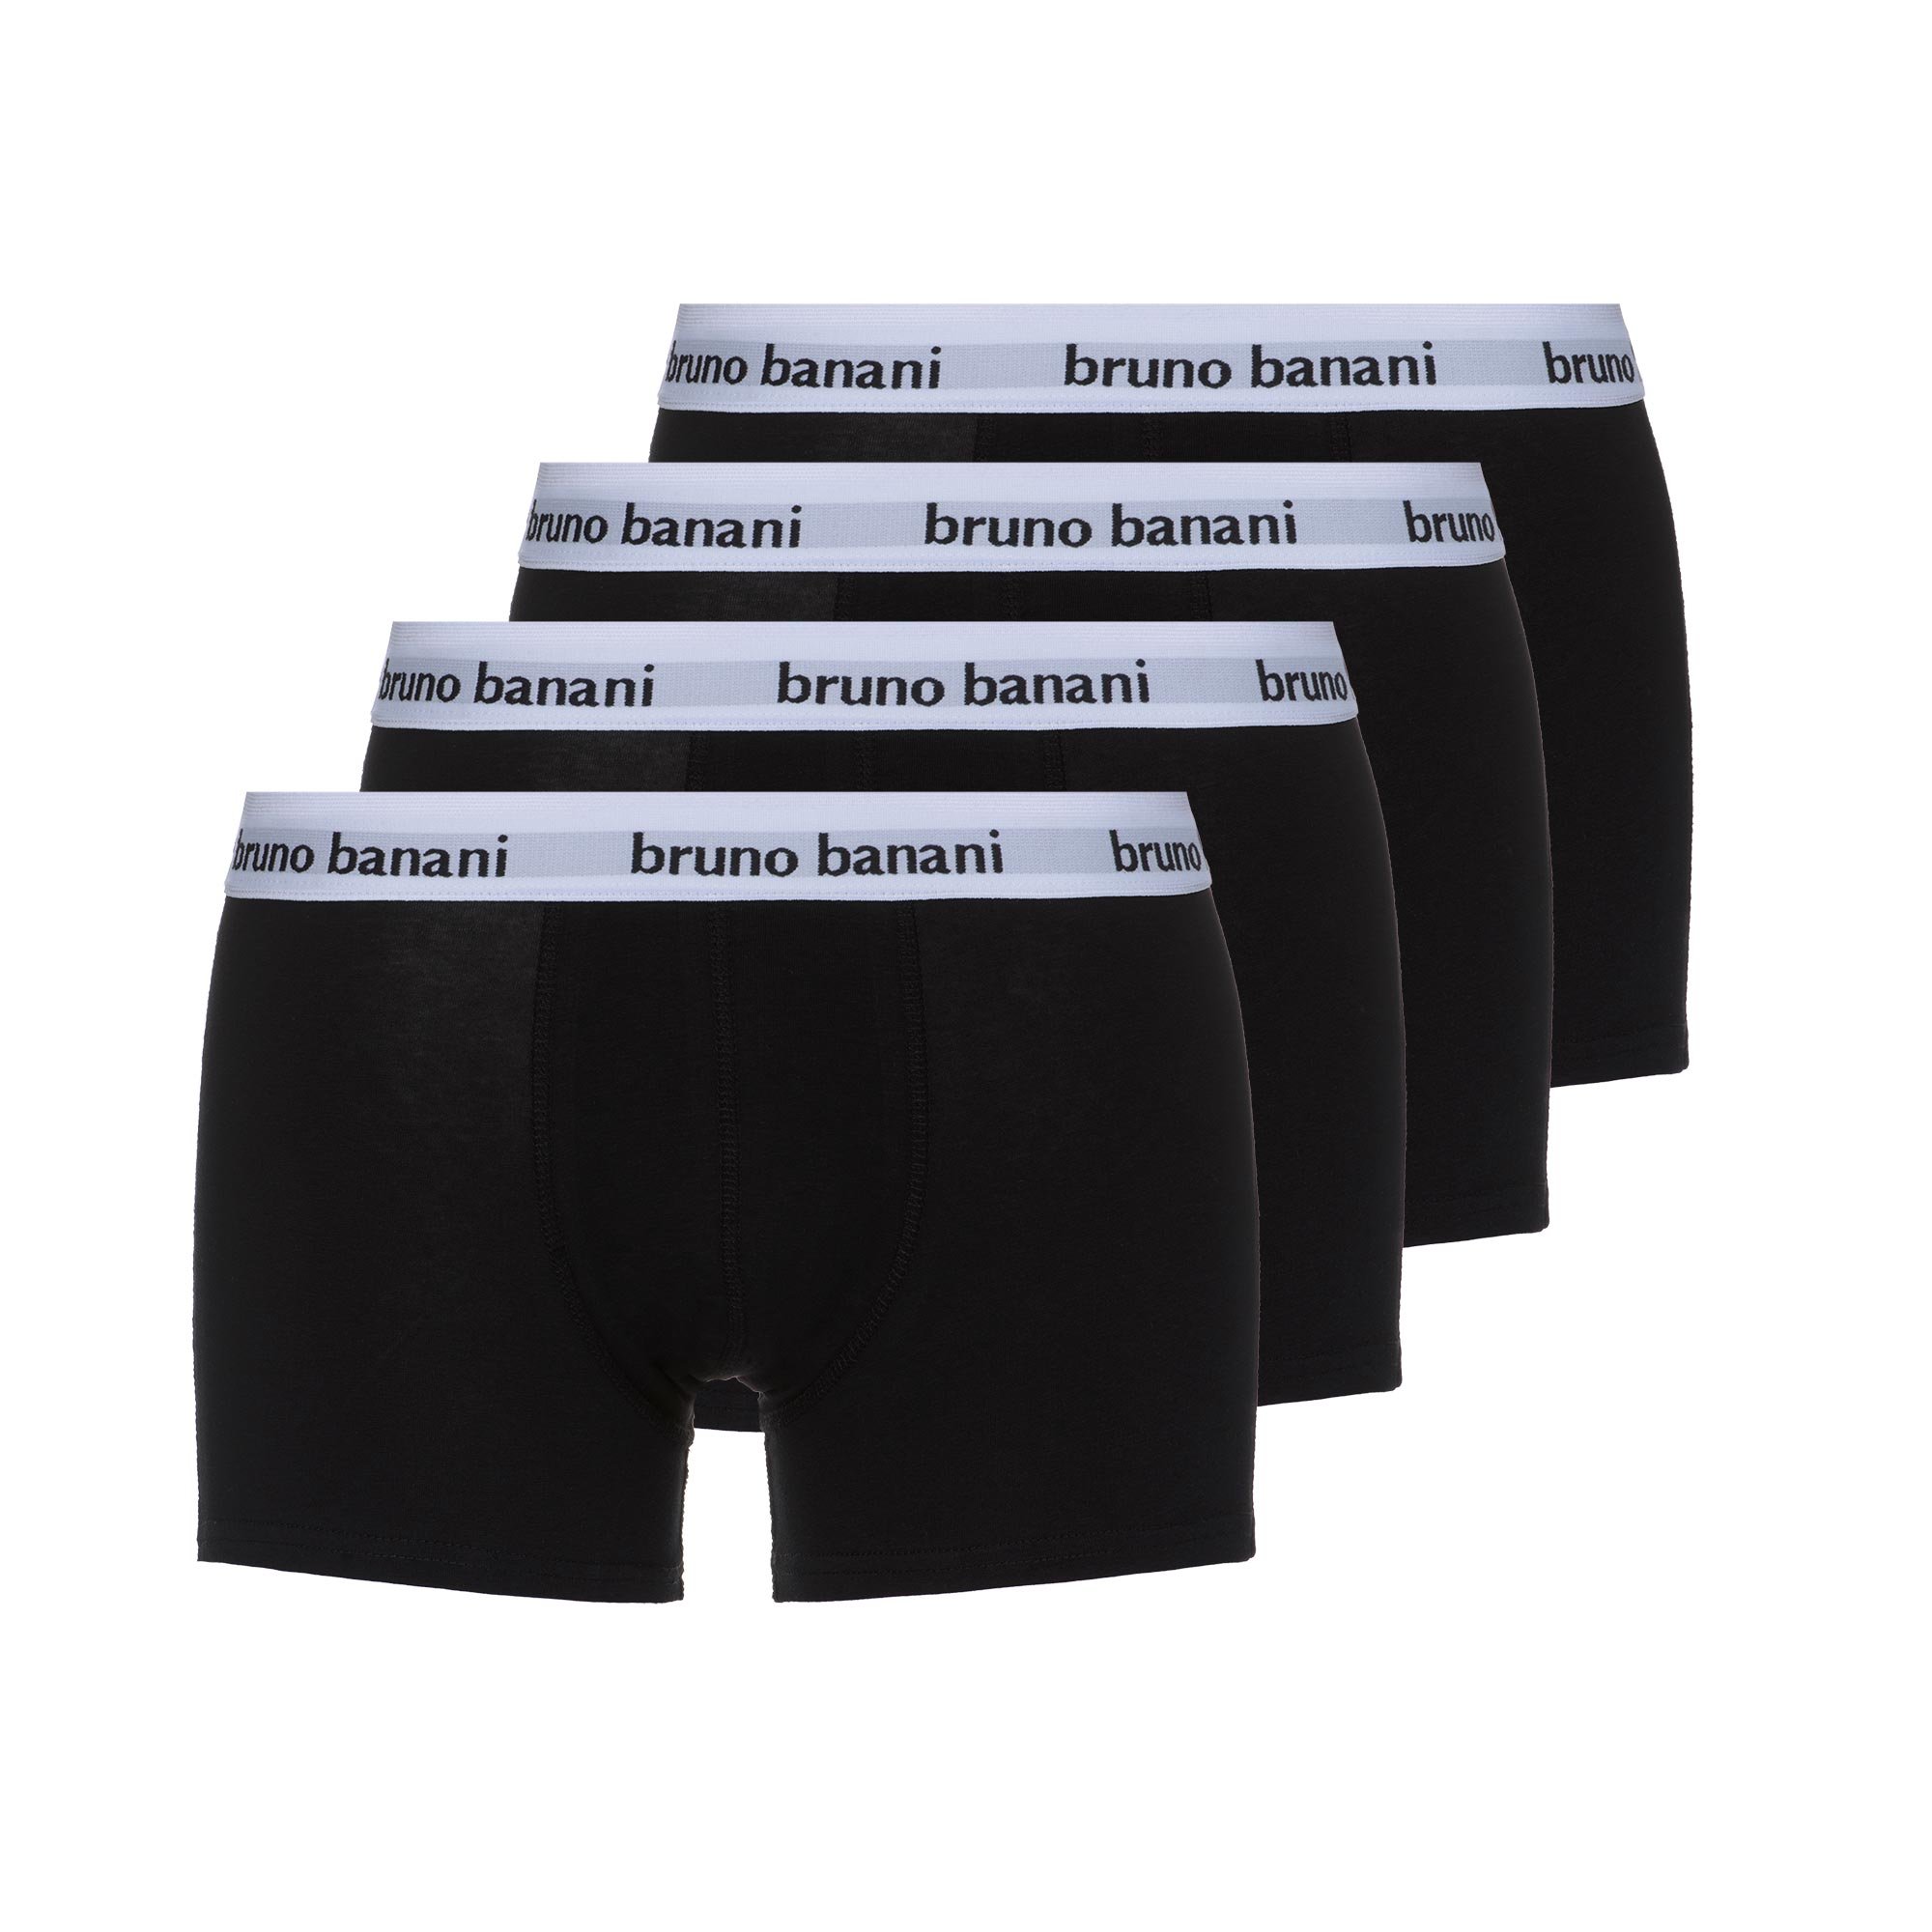 bruno banani Herren Shorts Snazzy - Moderne Boxershorts mit Logo-Bund, atmungsaktive und langlebige Baumwolle, Memory-Effekt, ohne Eingriff, eng anliegend, Größe S-XXL (4 Stück) schwarz, L